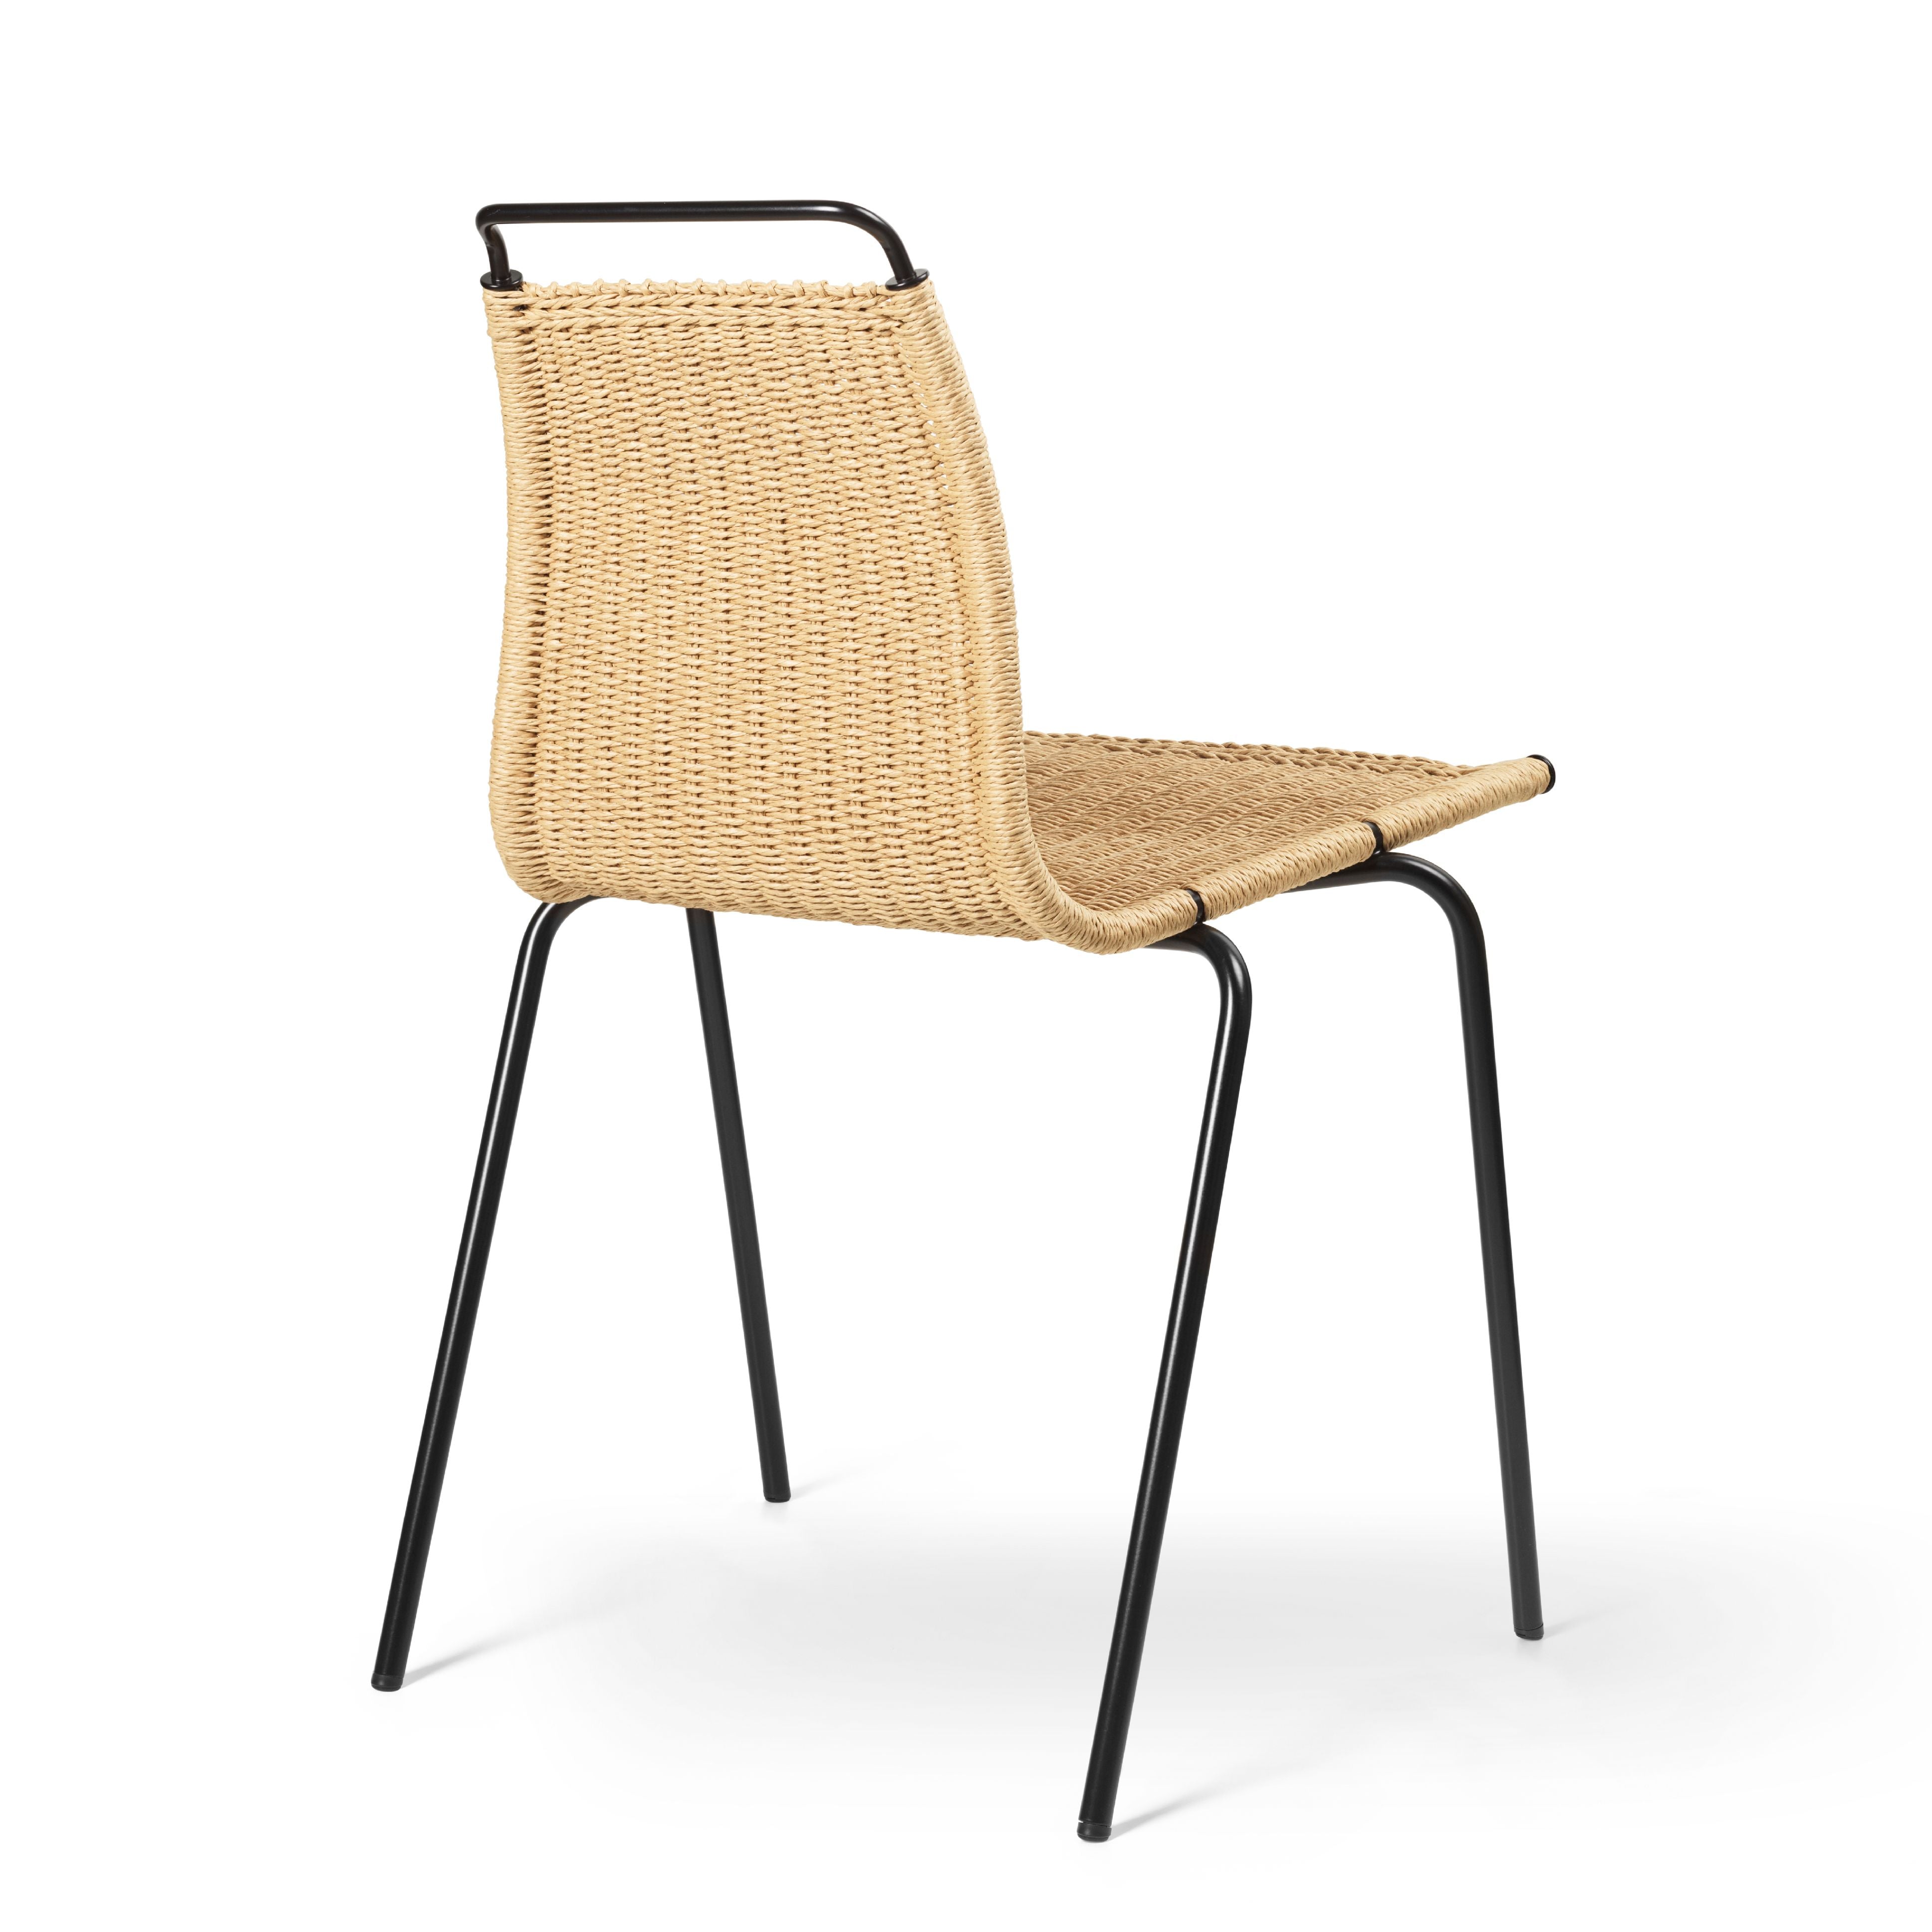 Carl Hansen PK1 stol, sort pulver coated stål/papir ledning vævning